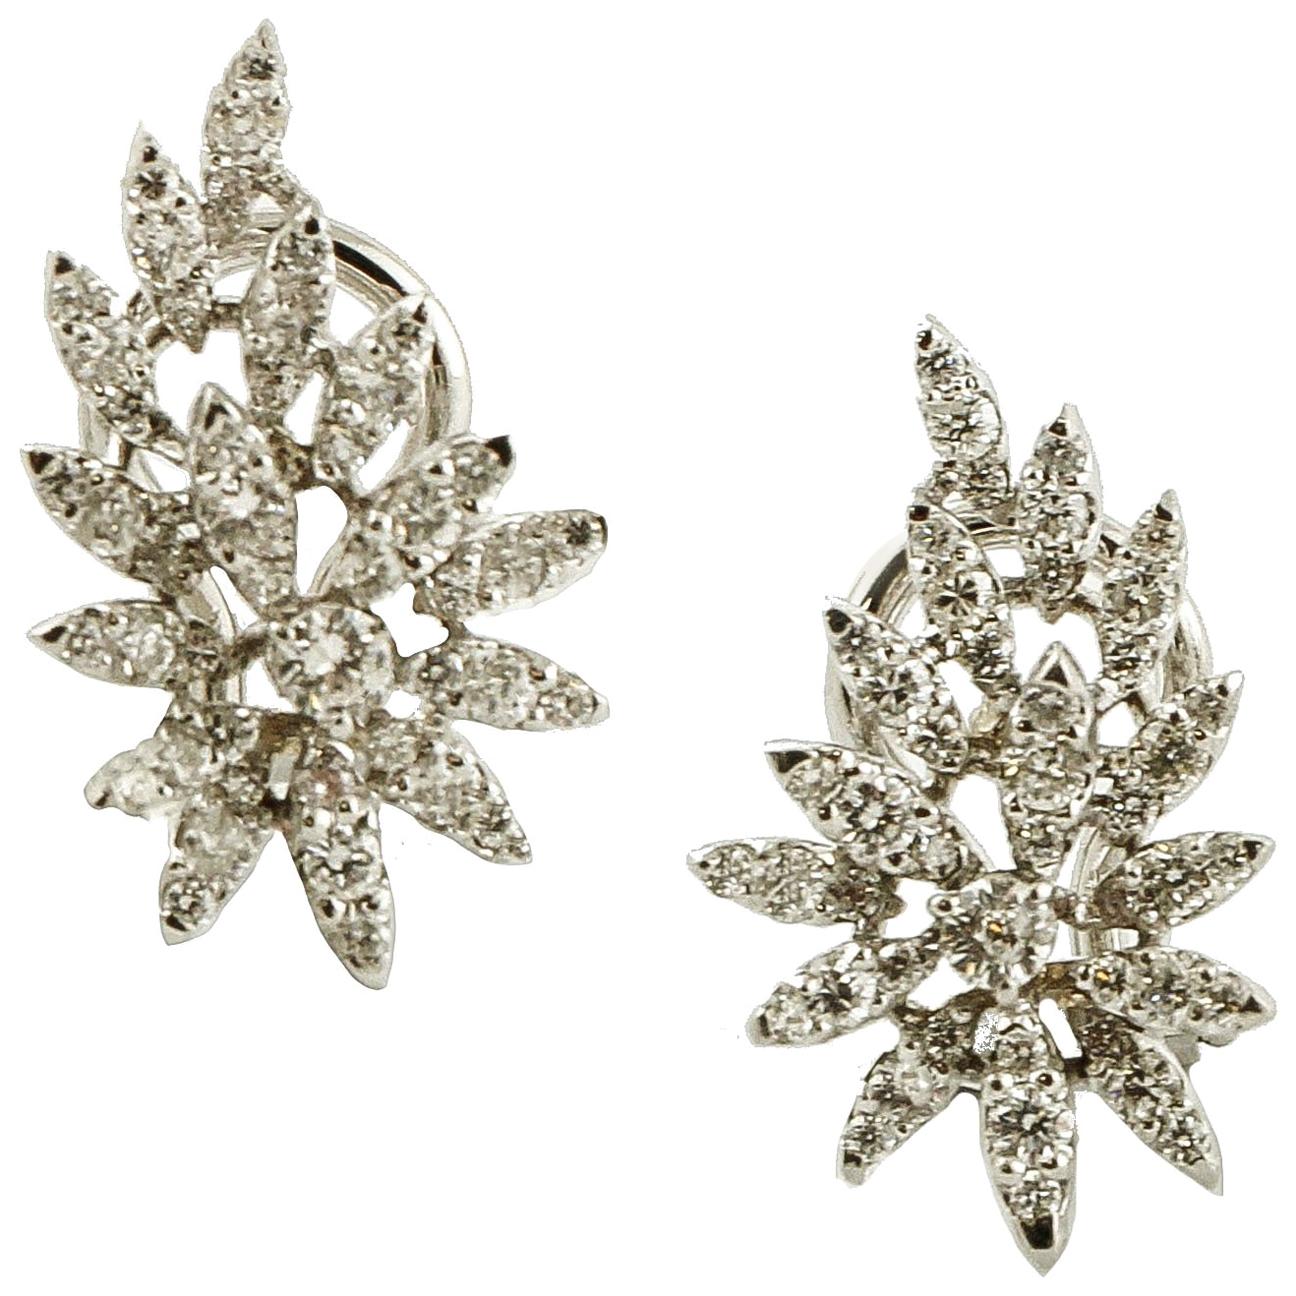 1.39 Carat Little White Diamonds, 18 Karat Gold, Leaves Theme, Earrings